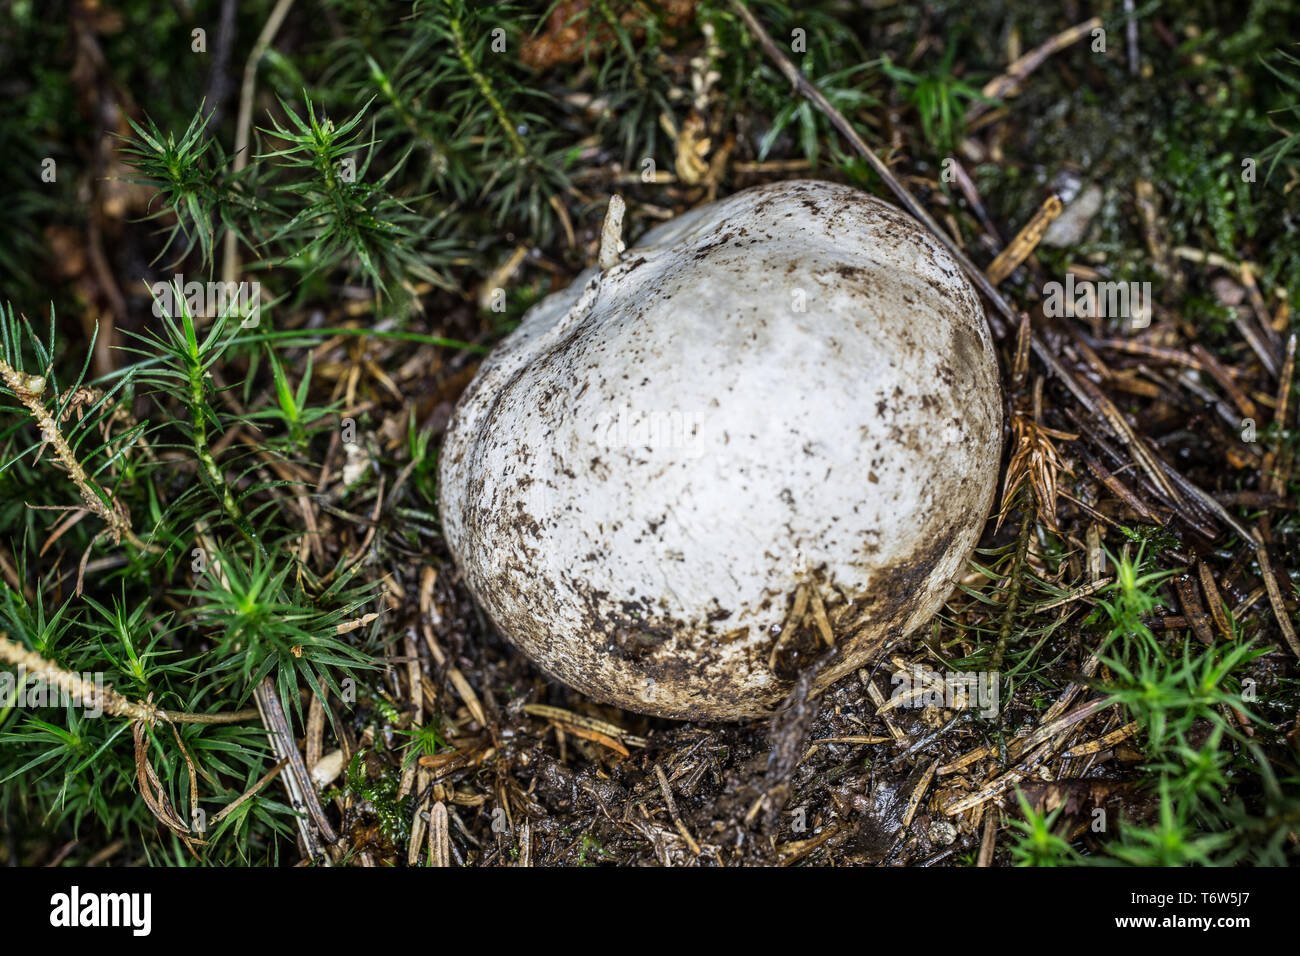 Spithe mushroom on forest soil Stock Photo